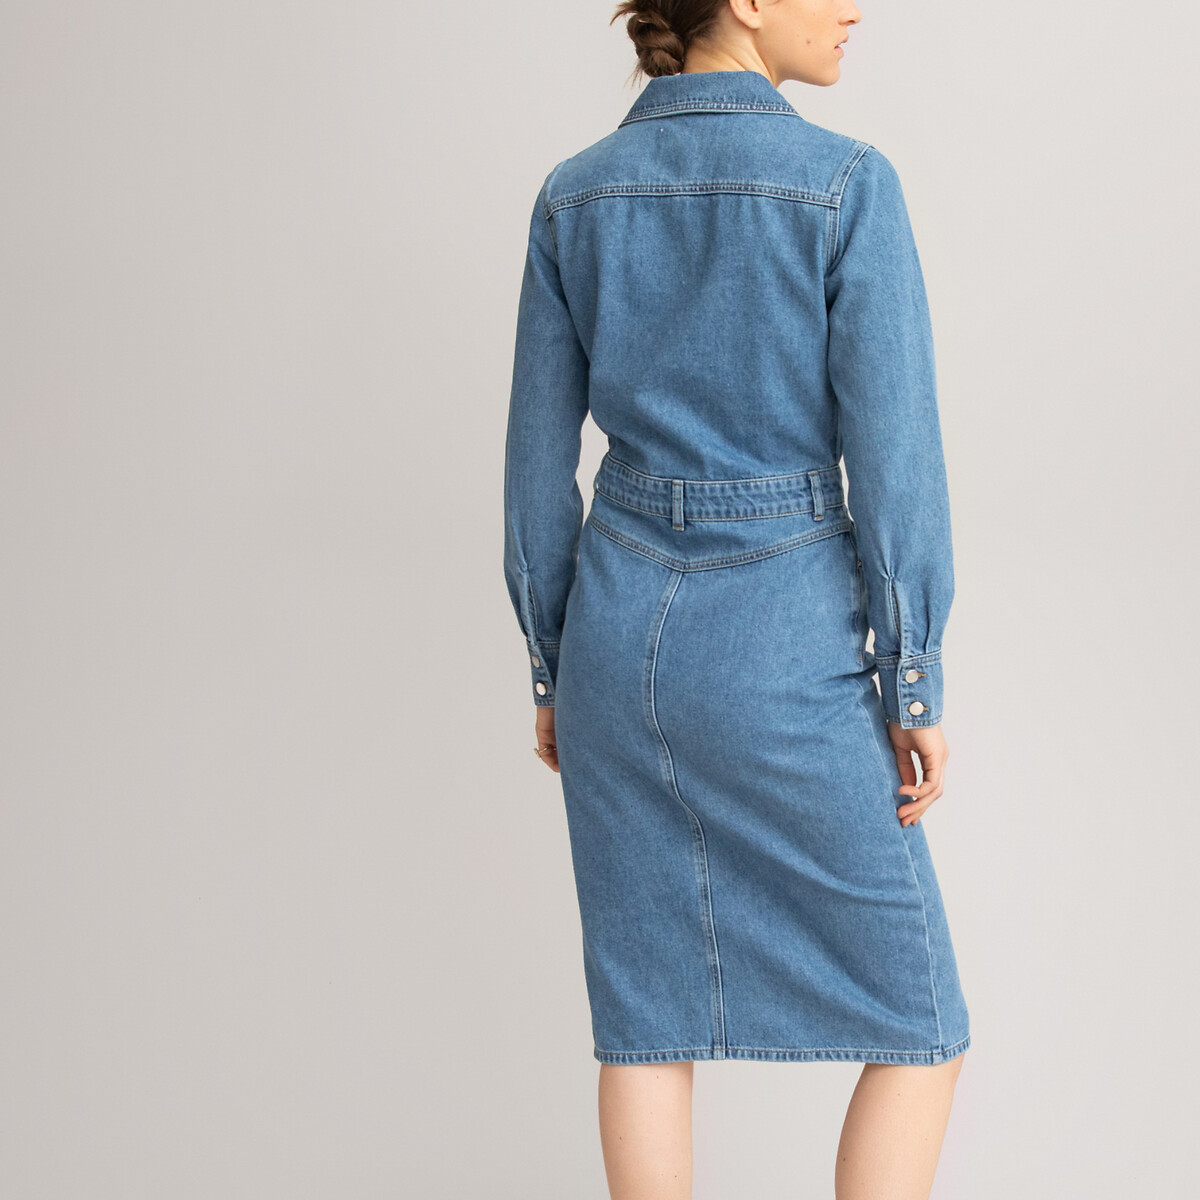 Платье LaRedoute С длинными рукавами из денима 38 (FR) - 44 (RUS) синий, размер 38 (FR) - 44 (RUS) С длинными рукавами из денима 38 (FR) - 44 (RUS) синий - фото 4